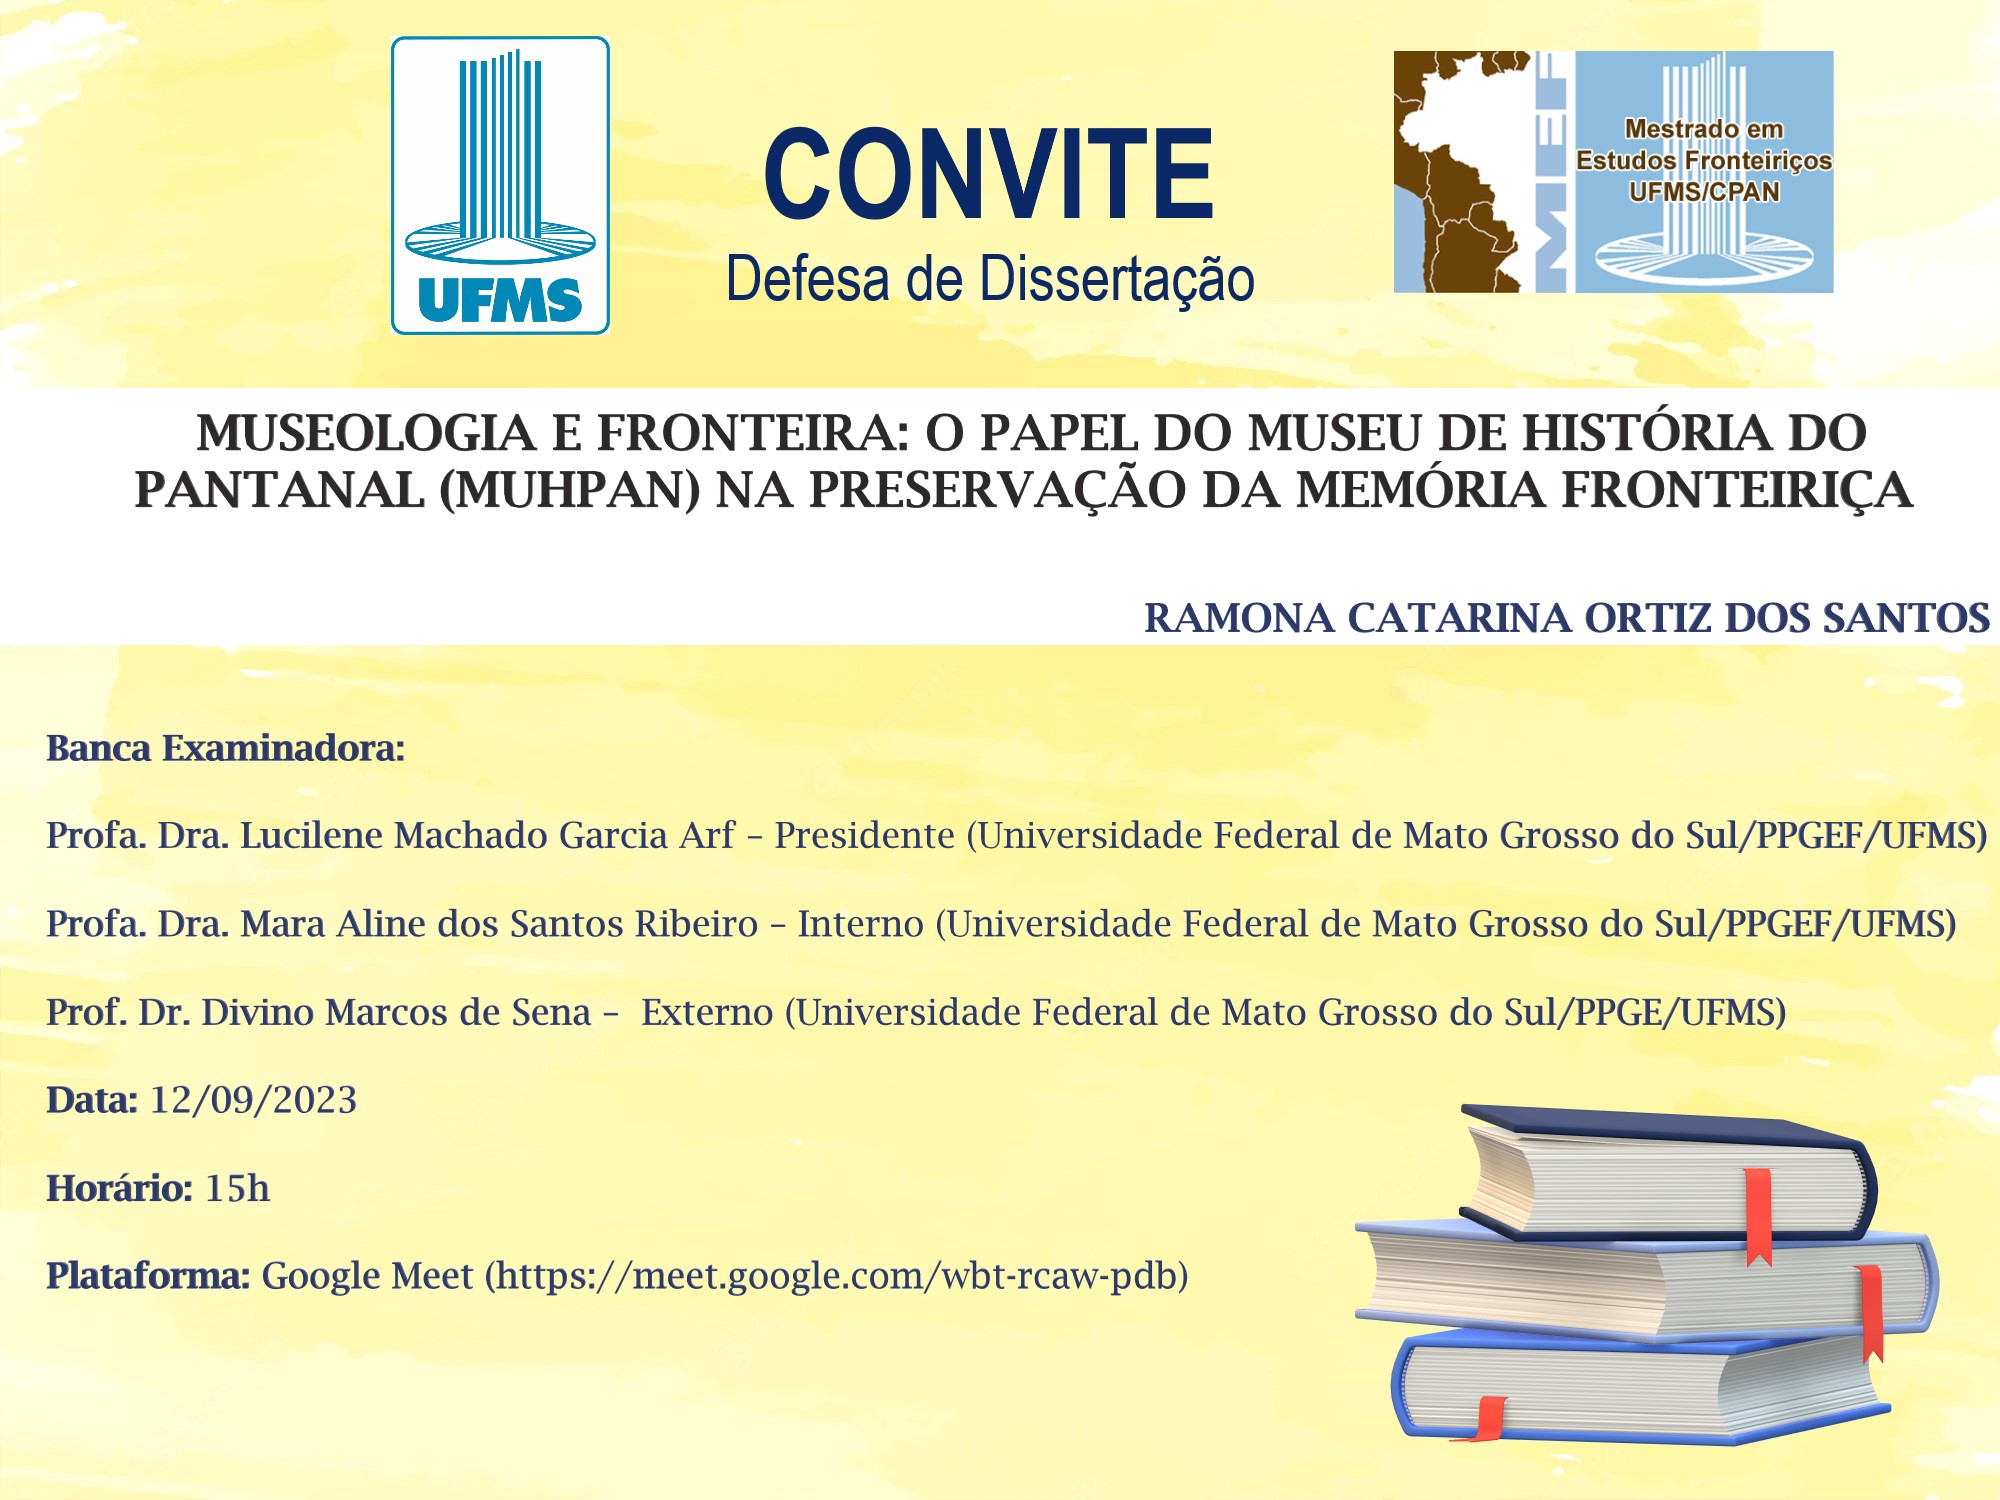 Defesa de Mestrado em Sociologia aborda mulheres em situação de cárcere em  Davinópolis — Universidade Federal do Maranhão